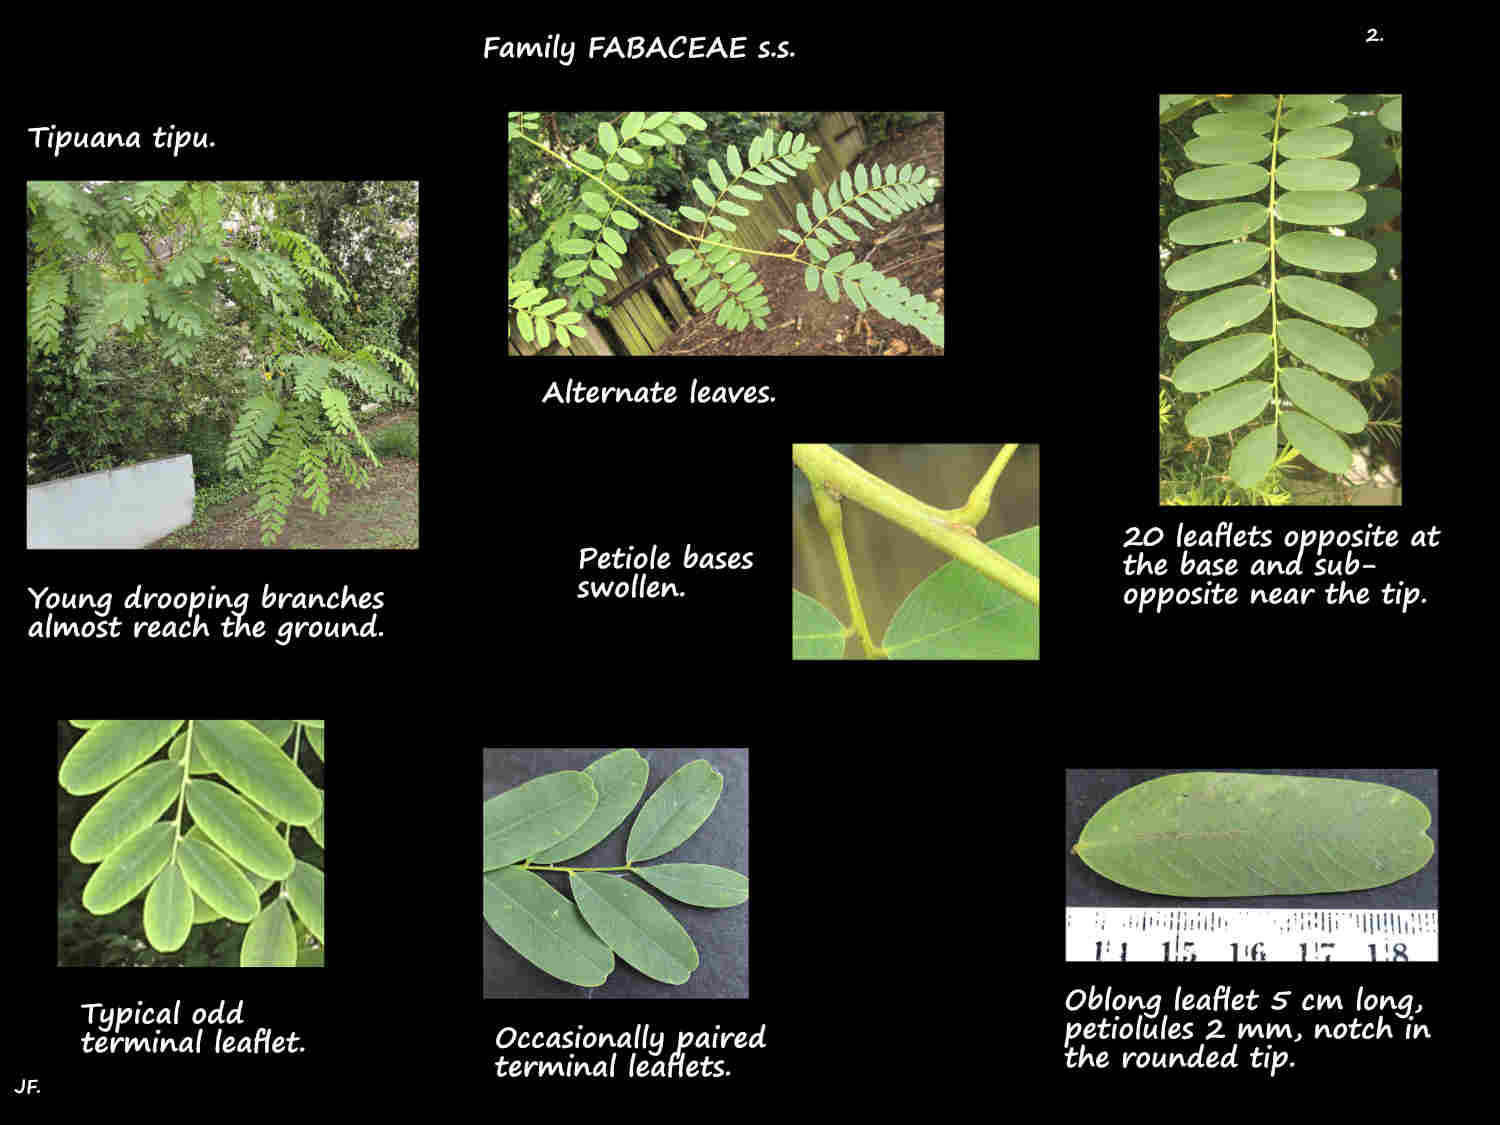 2 Tipuana tipu pinnate leaves